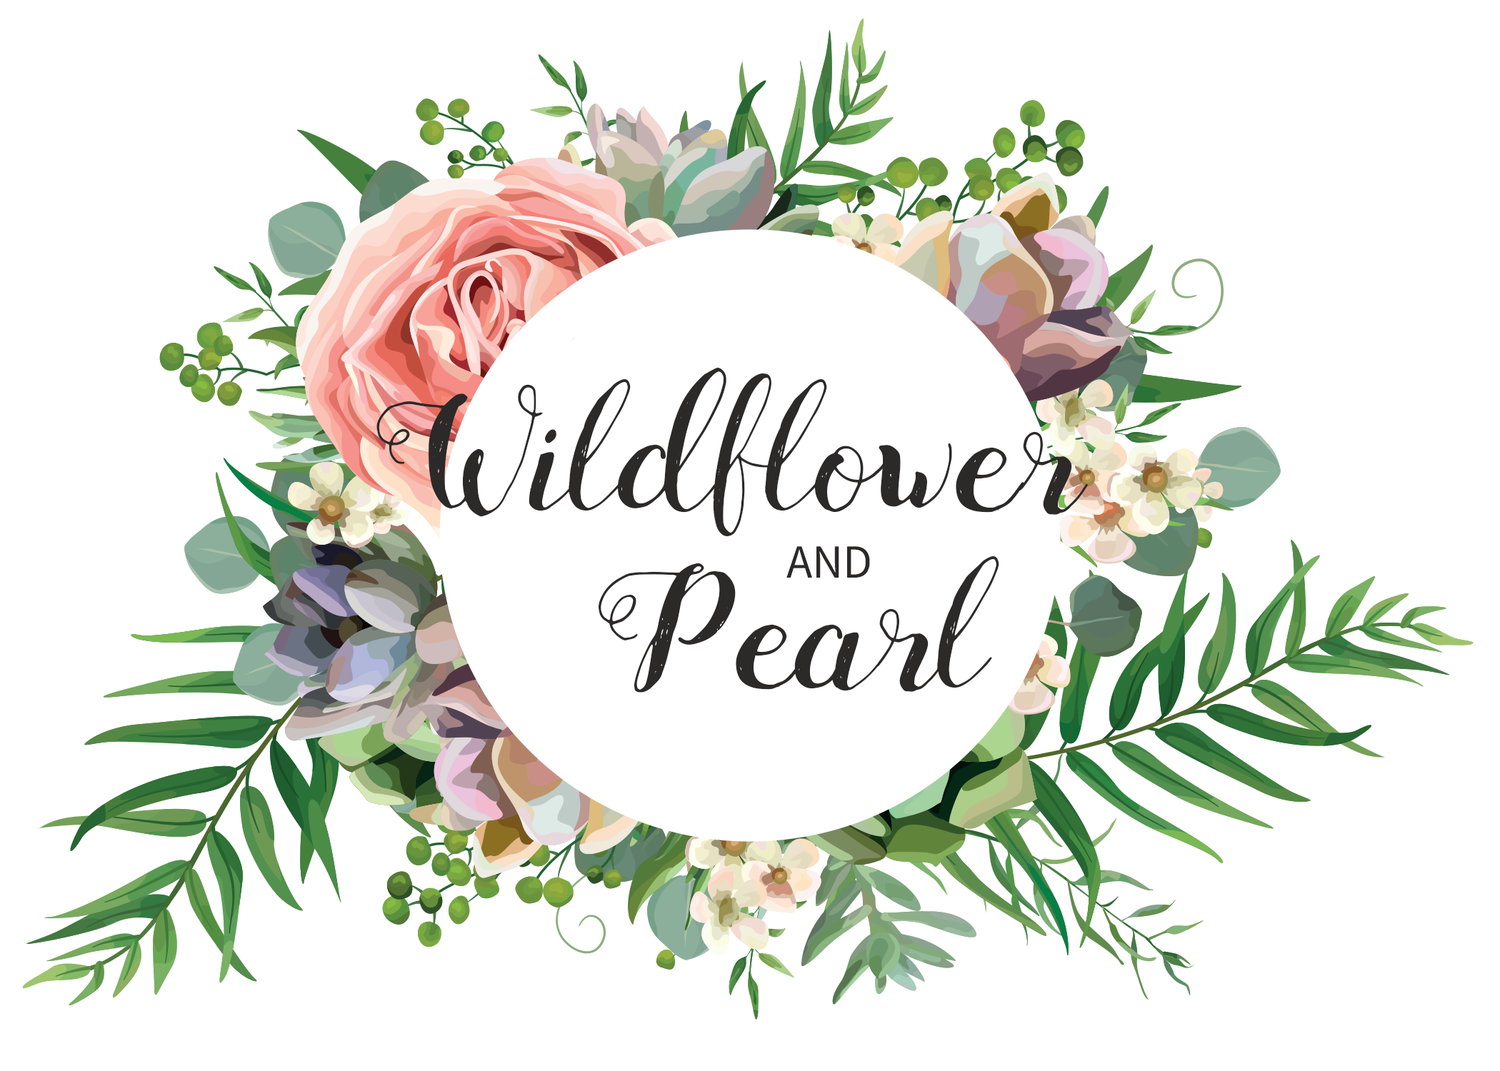 Wildflower + Pearl